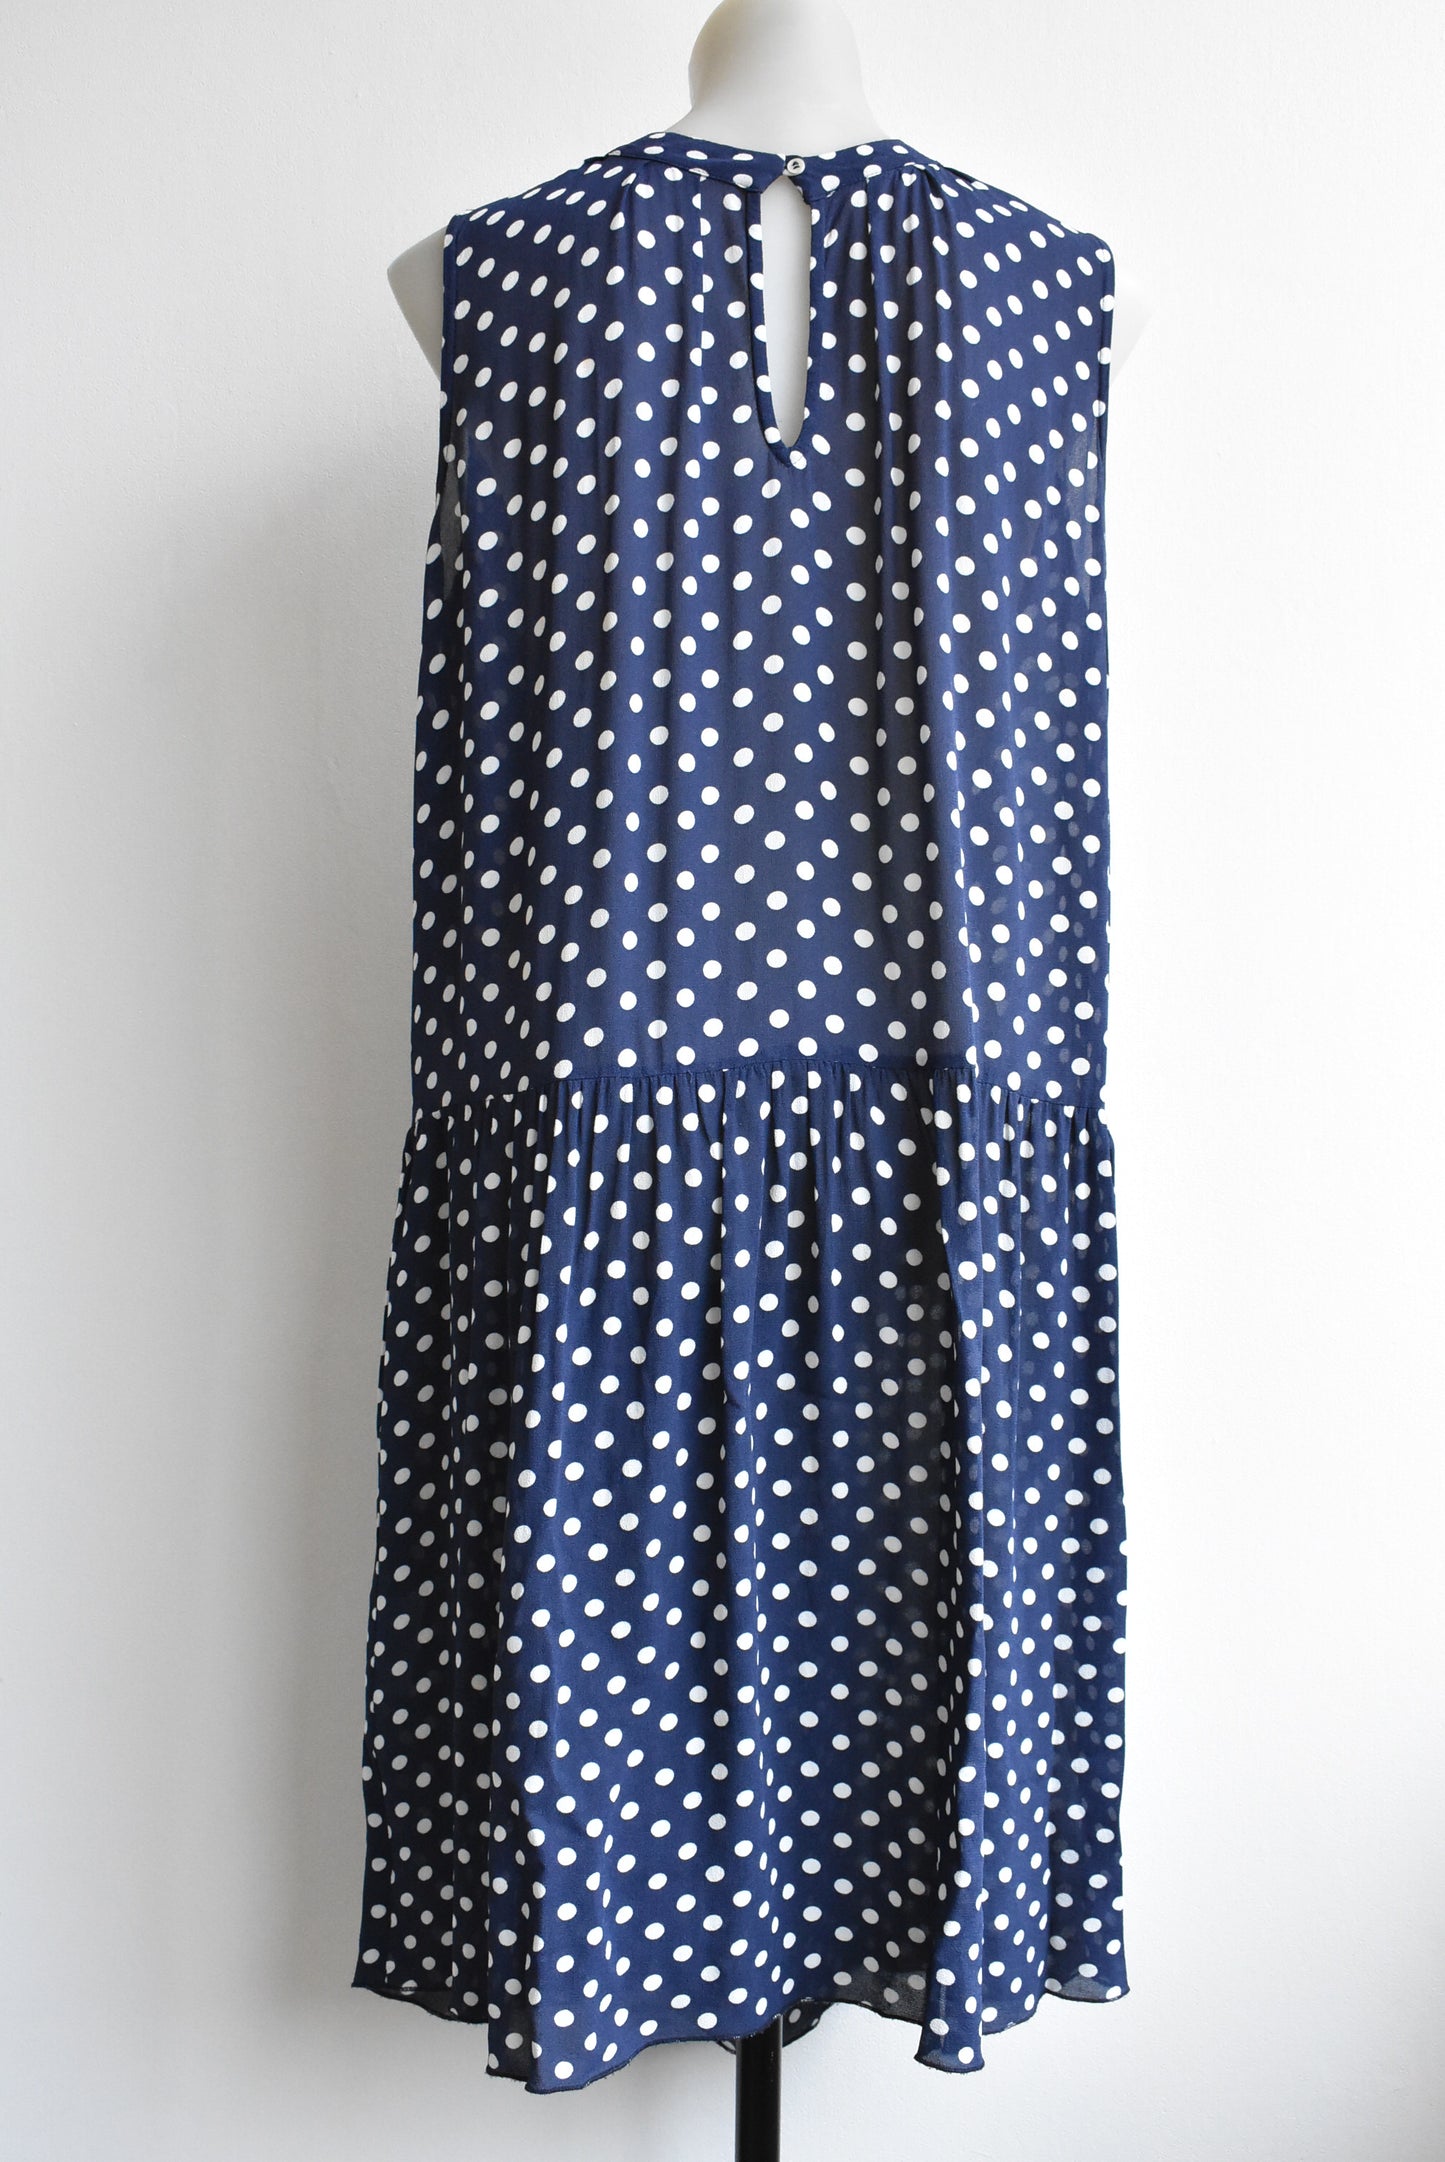 Calliope navy & white polka dot dress, size S